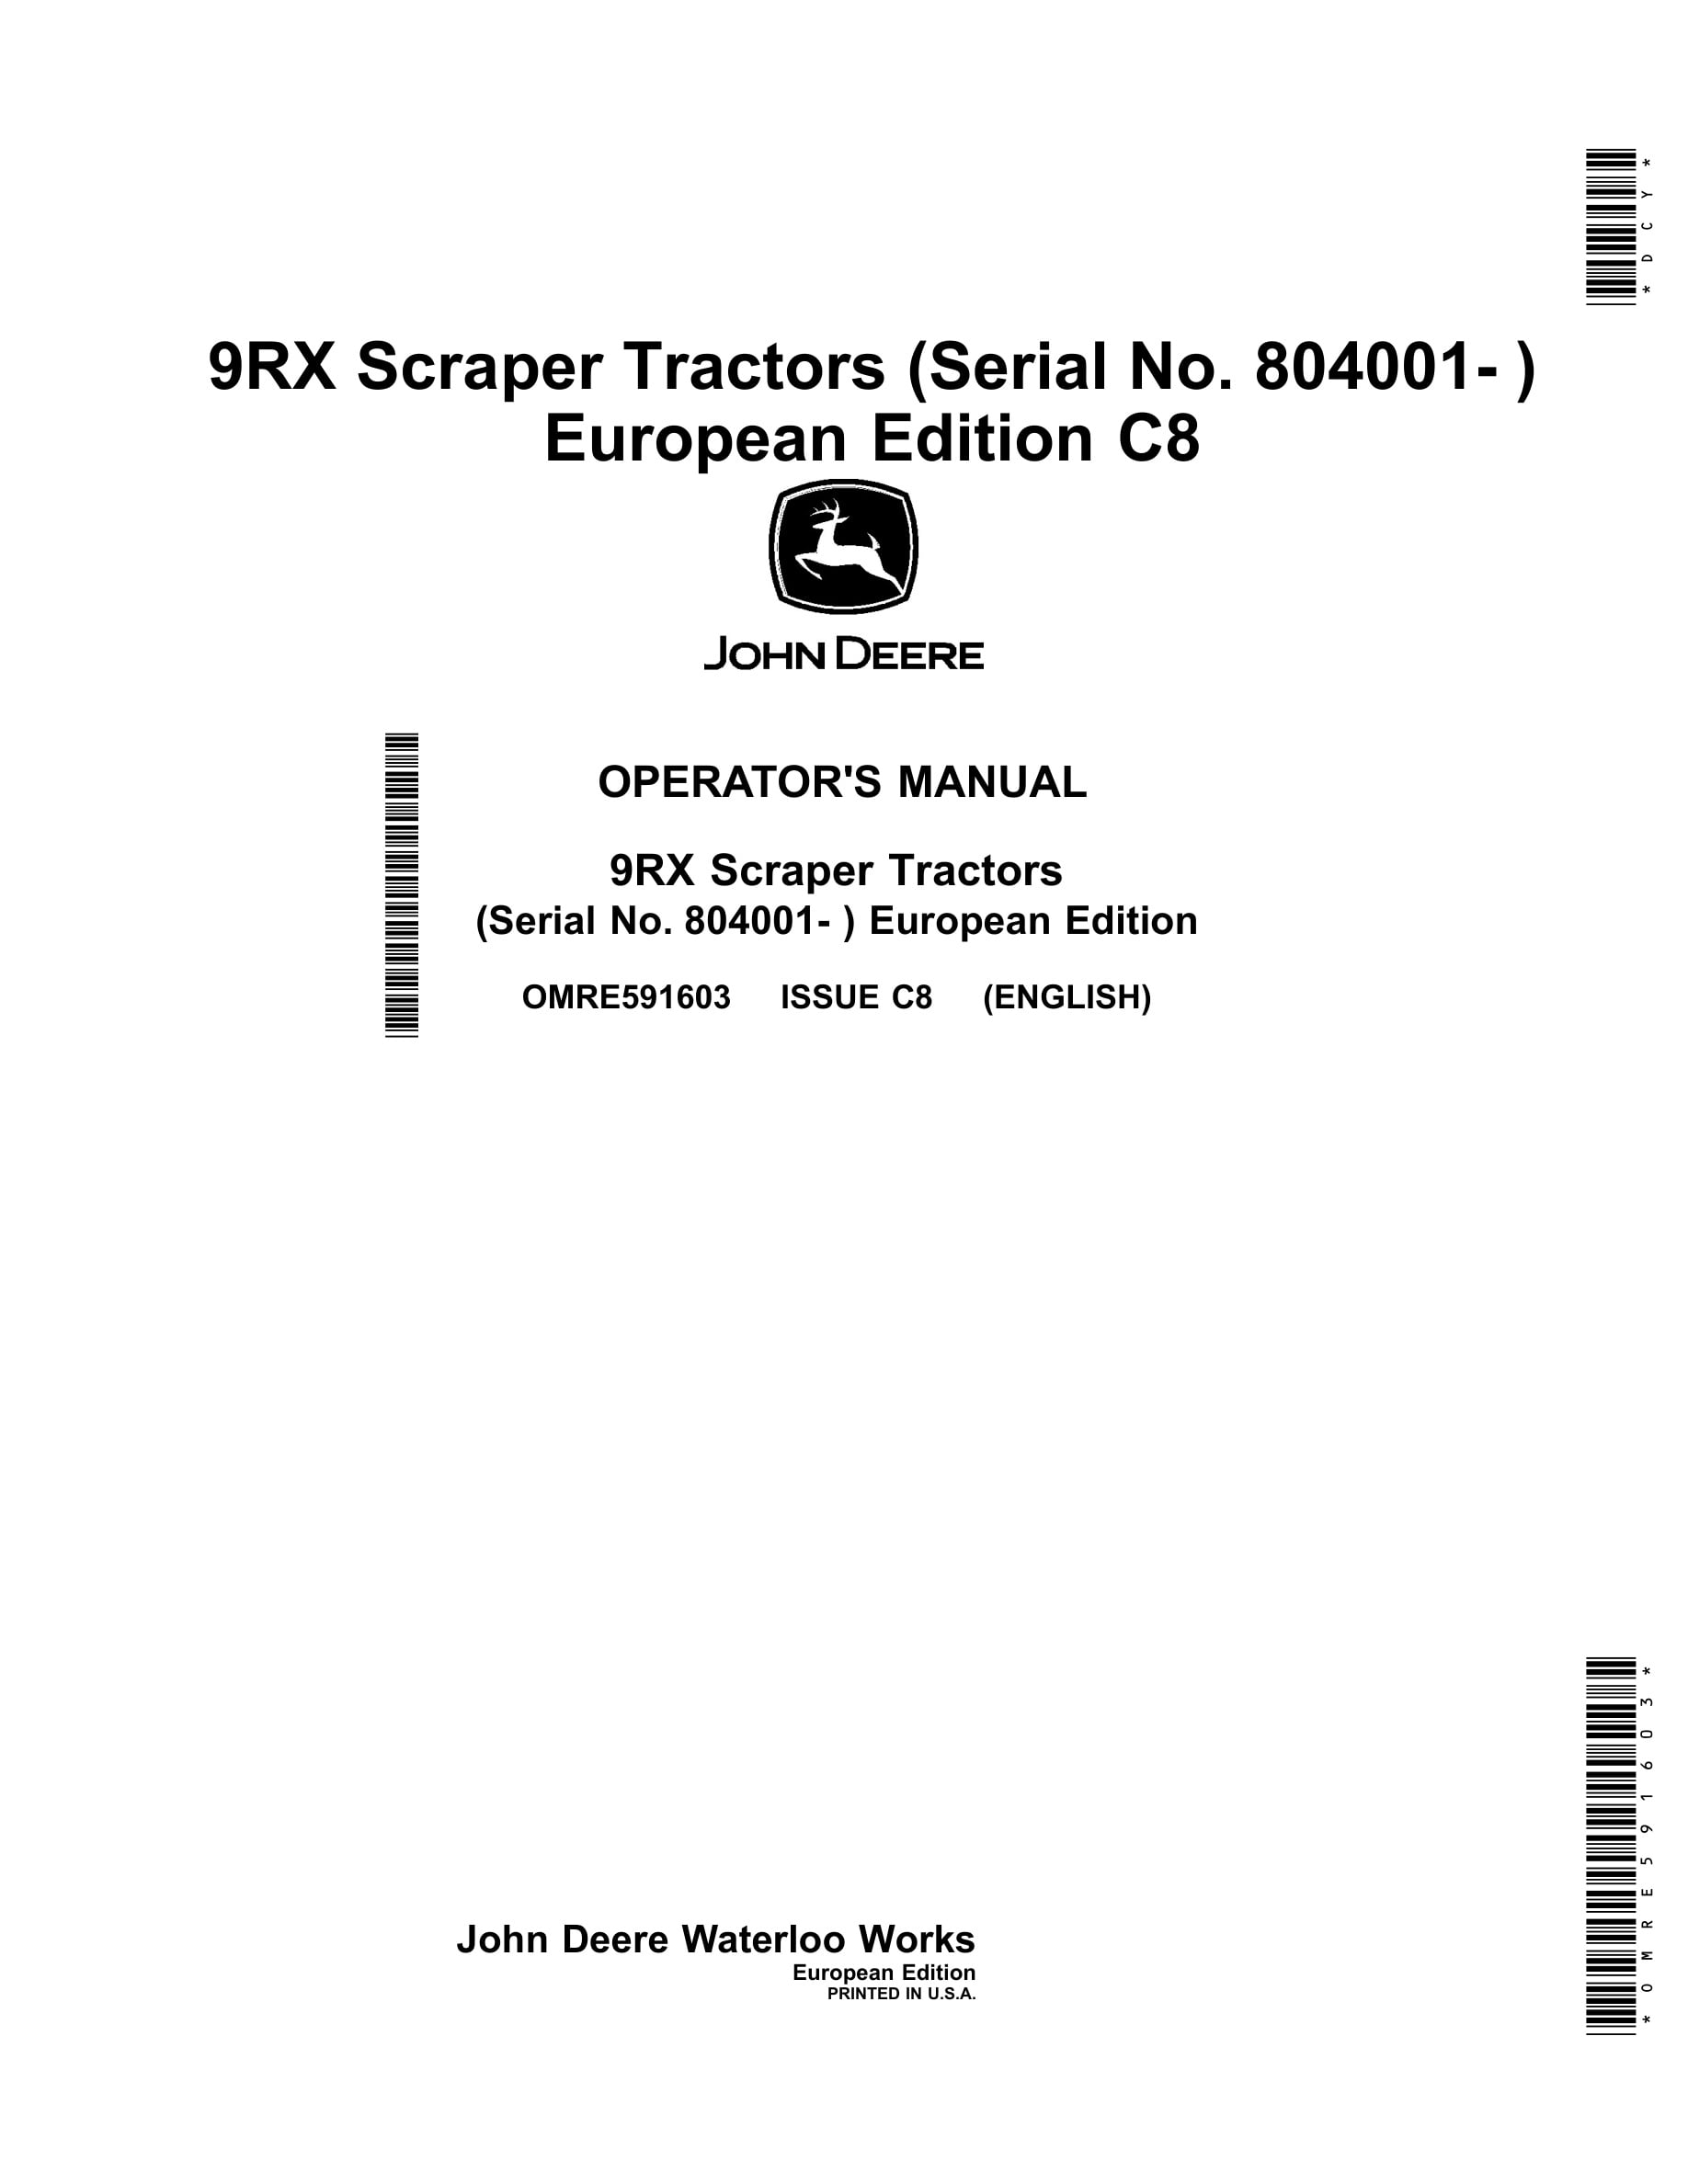 John Deere 9rx Scraper Tractors Operator Manuals OMRE591603-1